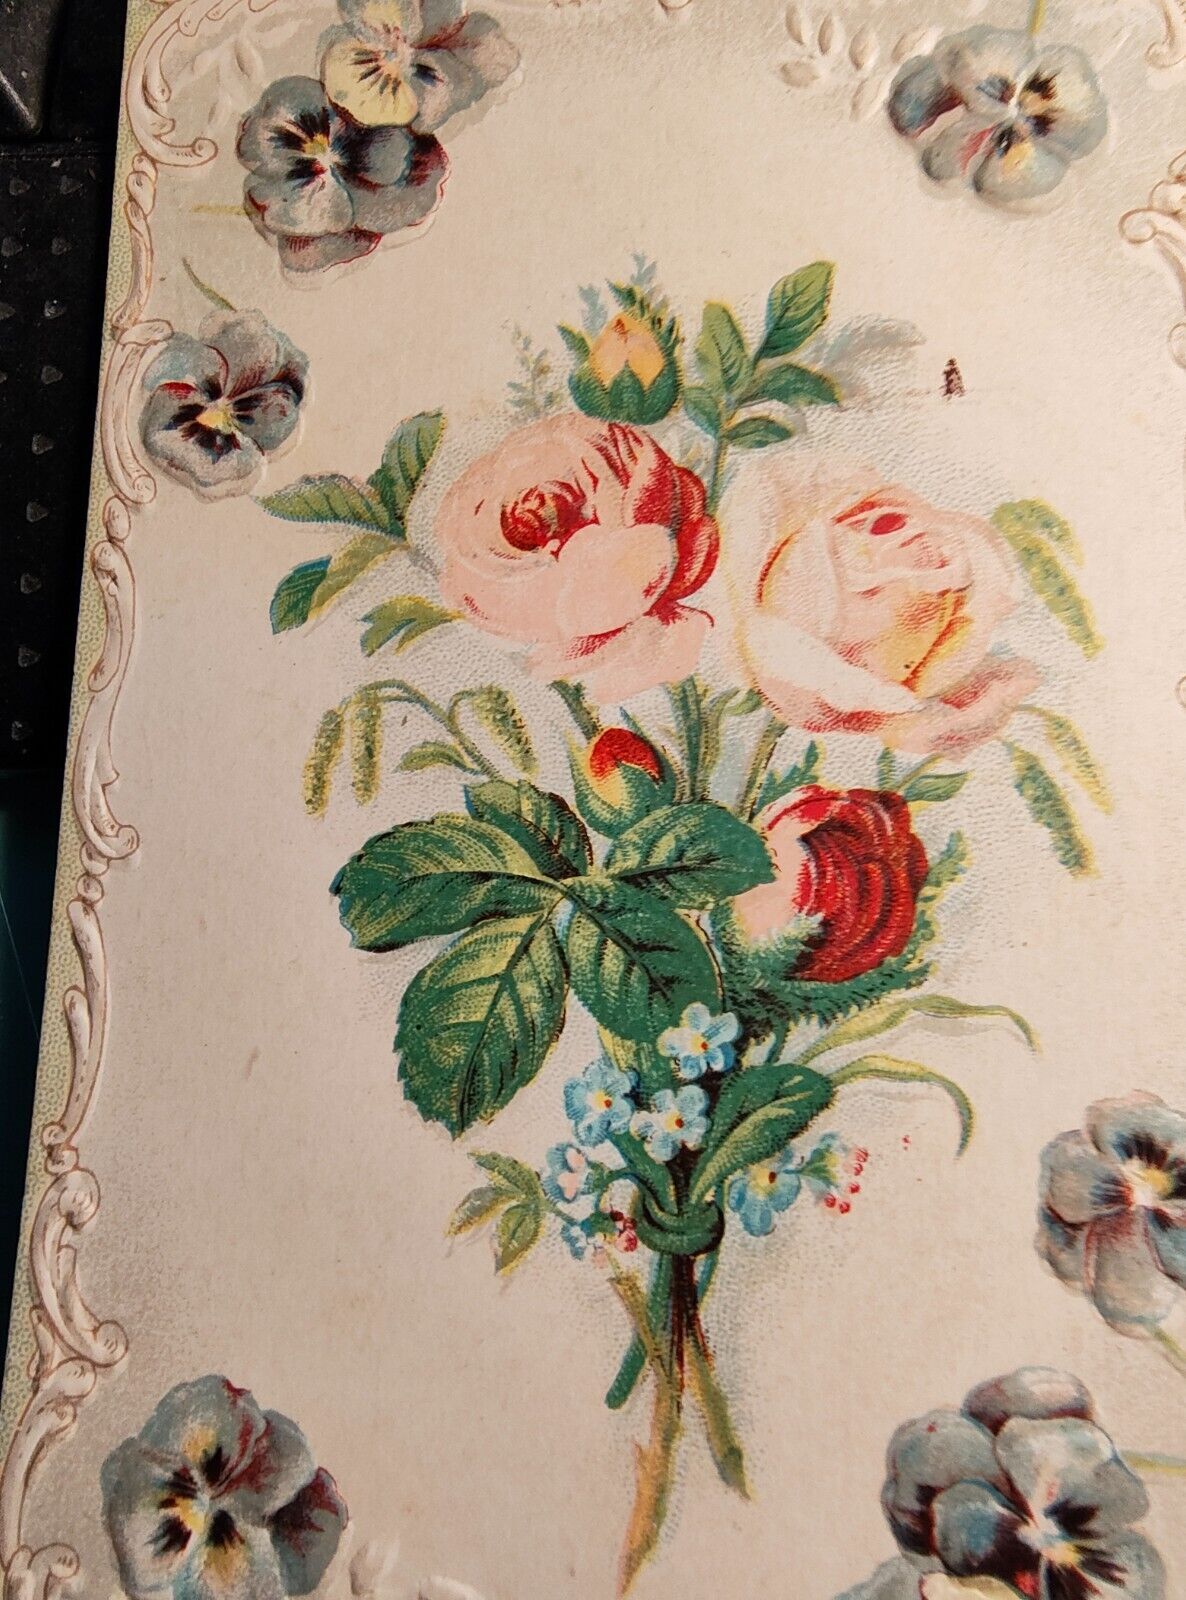 ANTTIQUE FLOWER POSTCARD,1908,ROSES